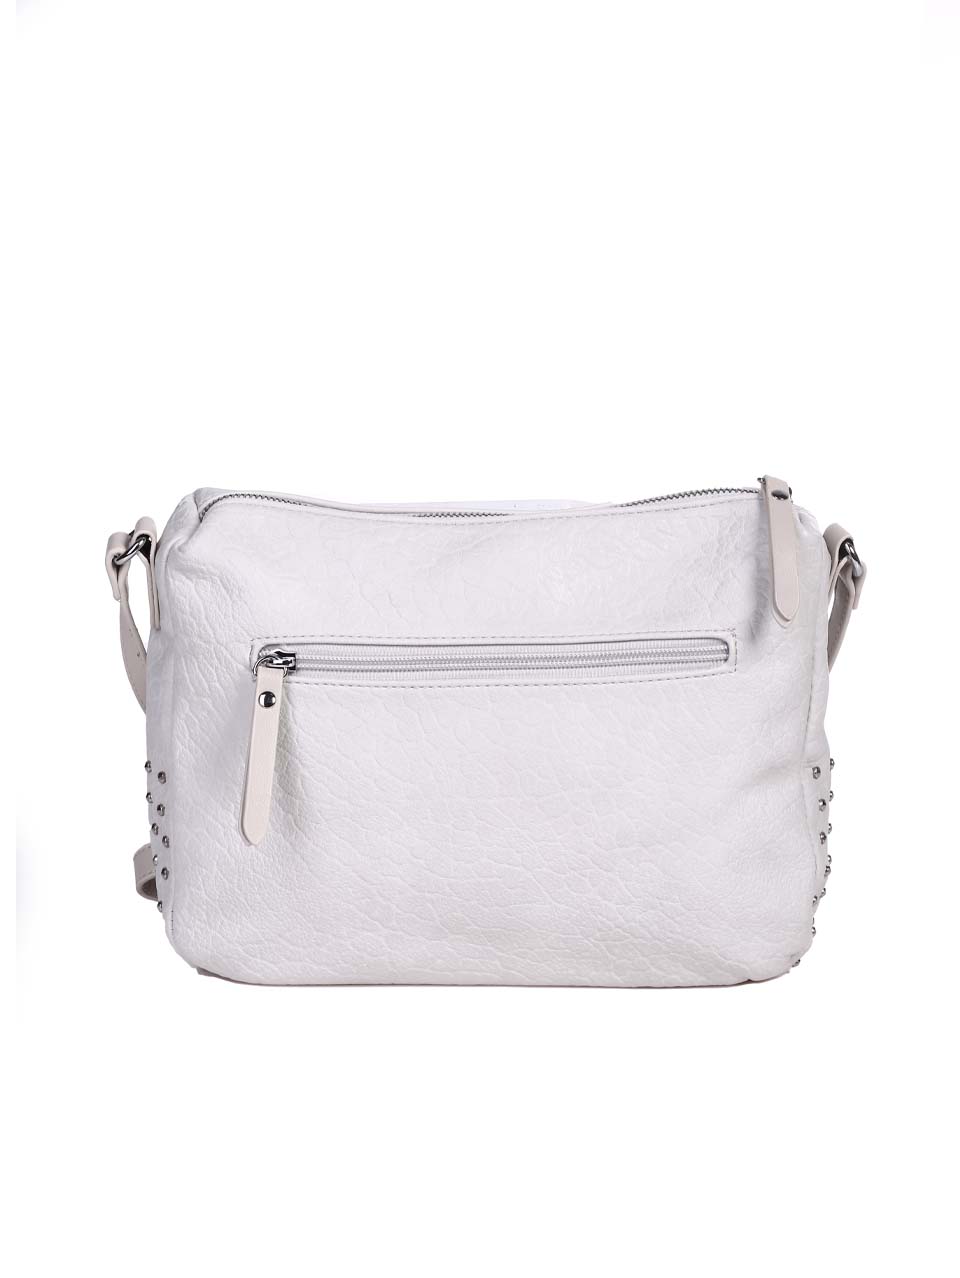 Ежедневна дамска чанта в бял/сив цвят 9Q-24291 оff white